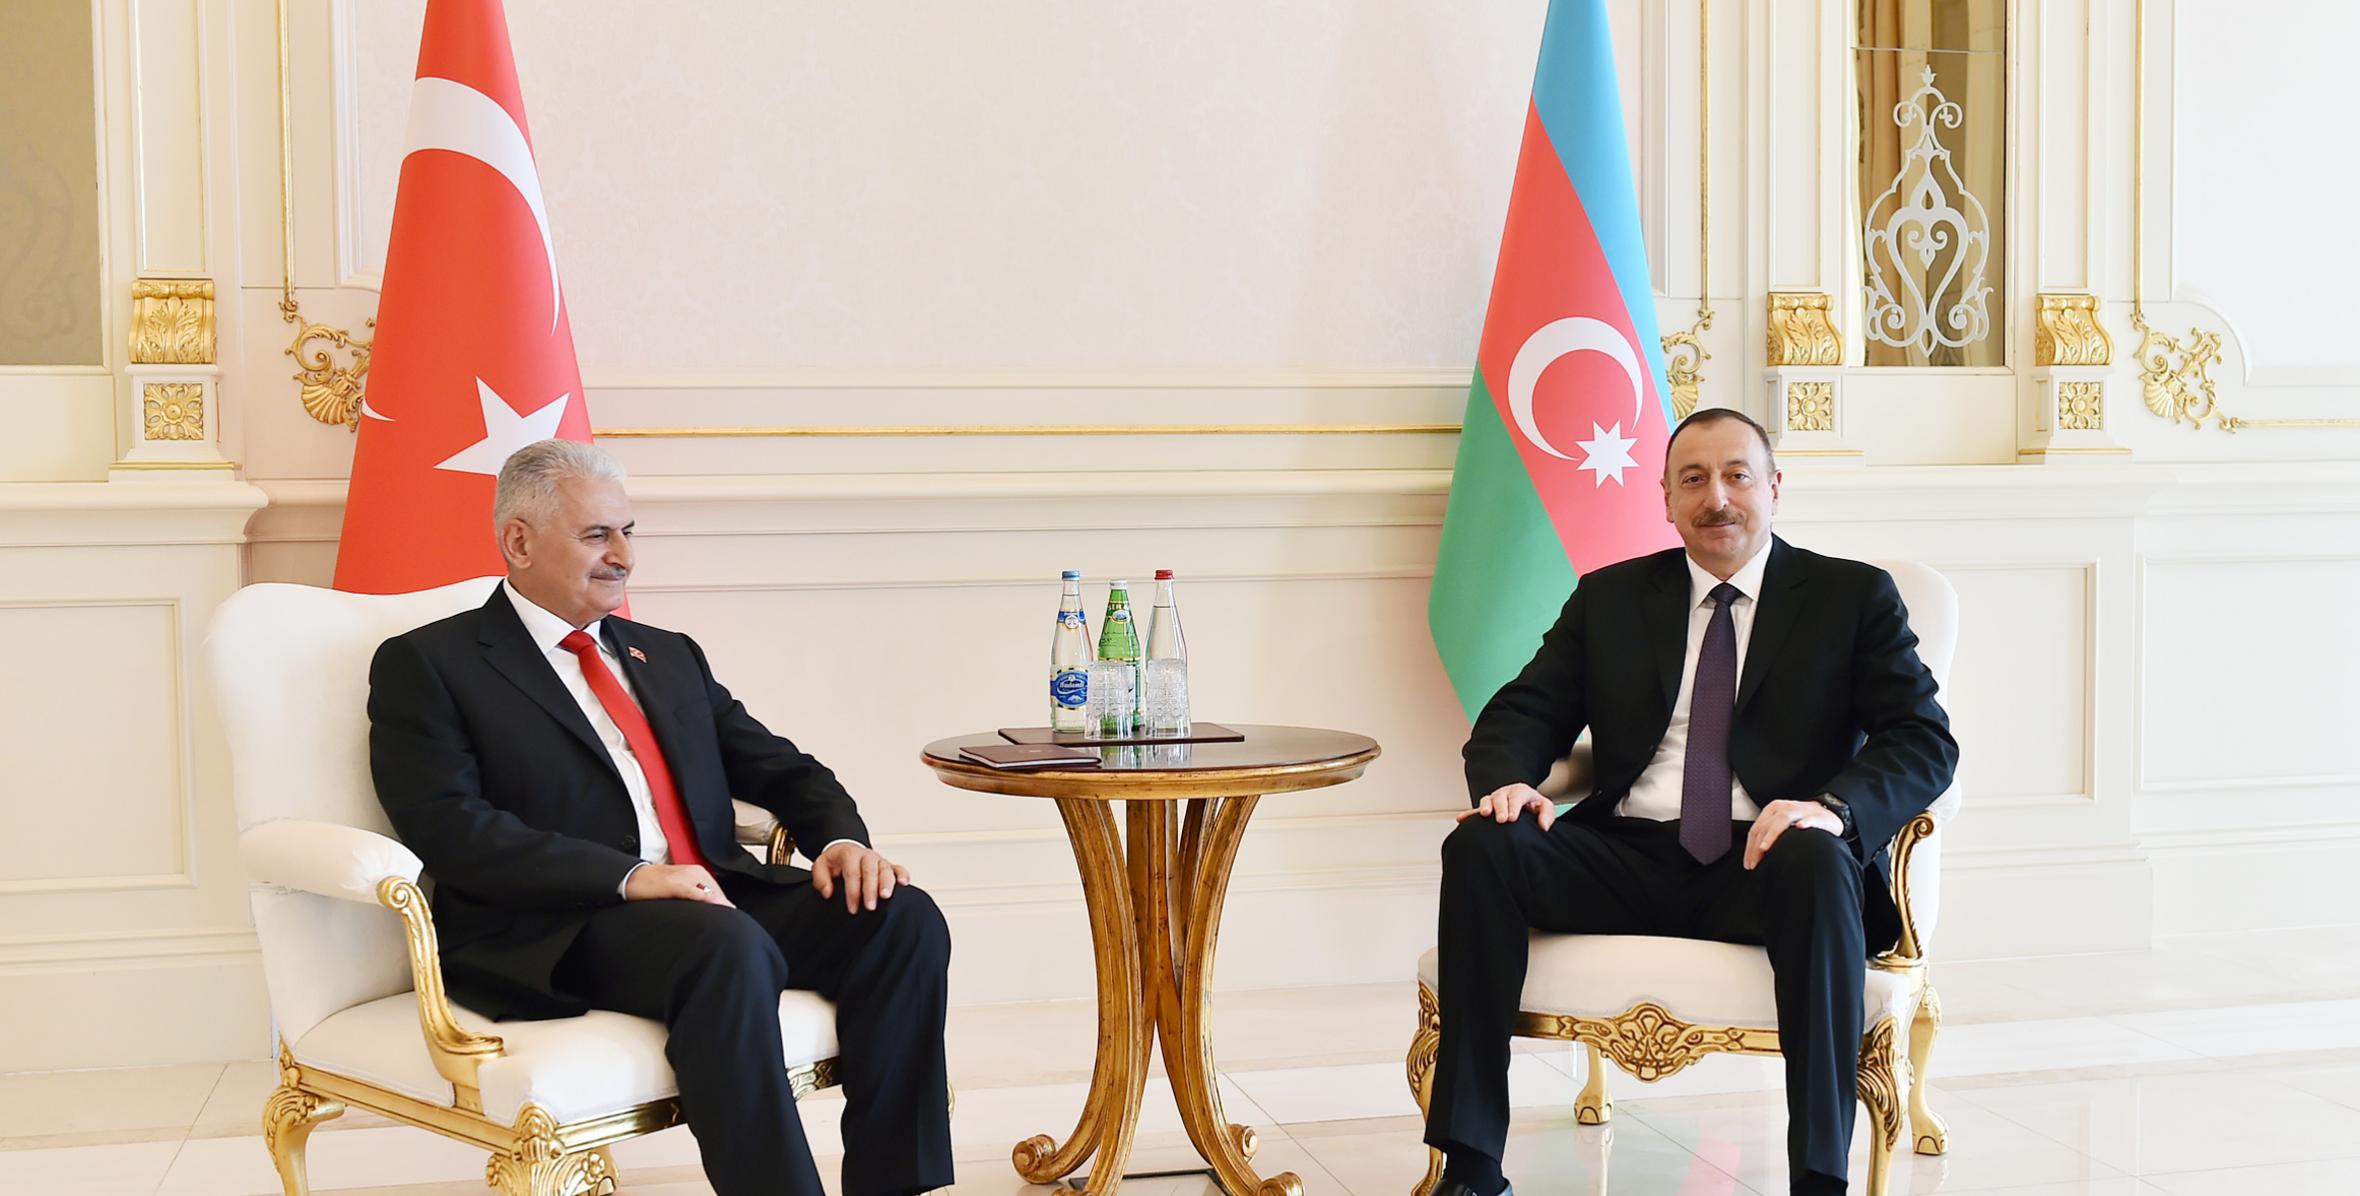 Состоялась встреча Ильхама Алиева с премьер-министром Турции Бинали Йылдырымом один на один